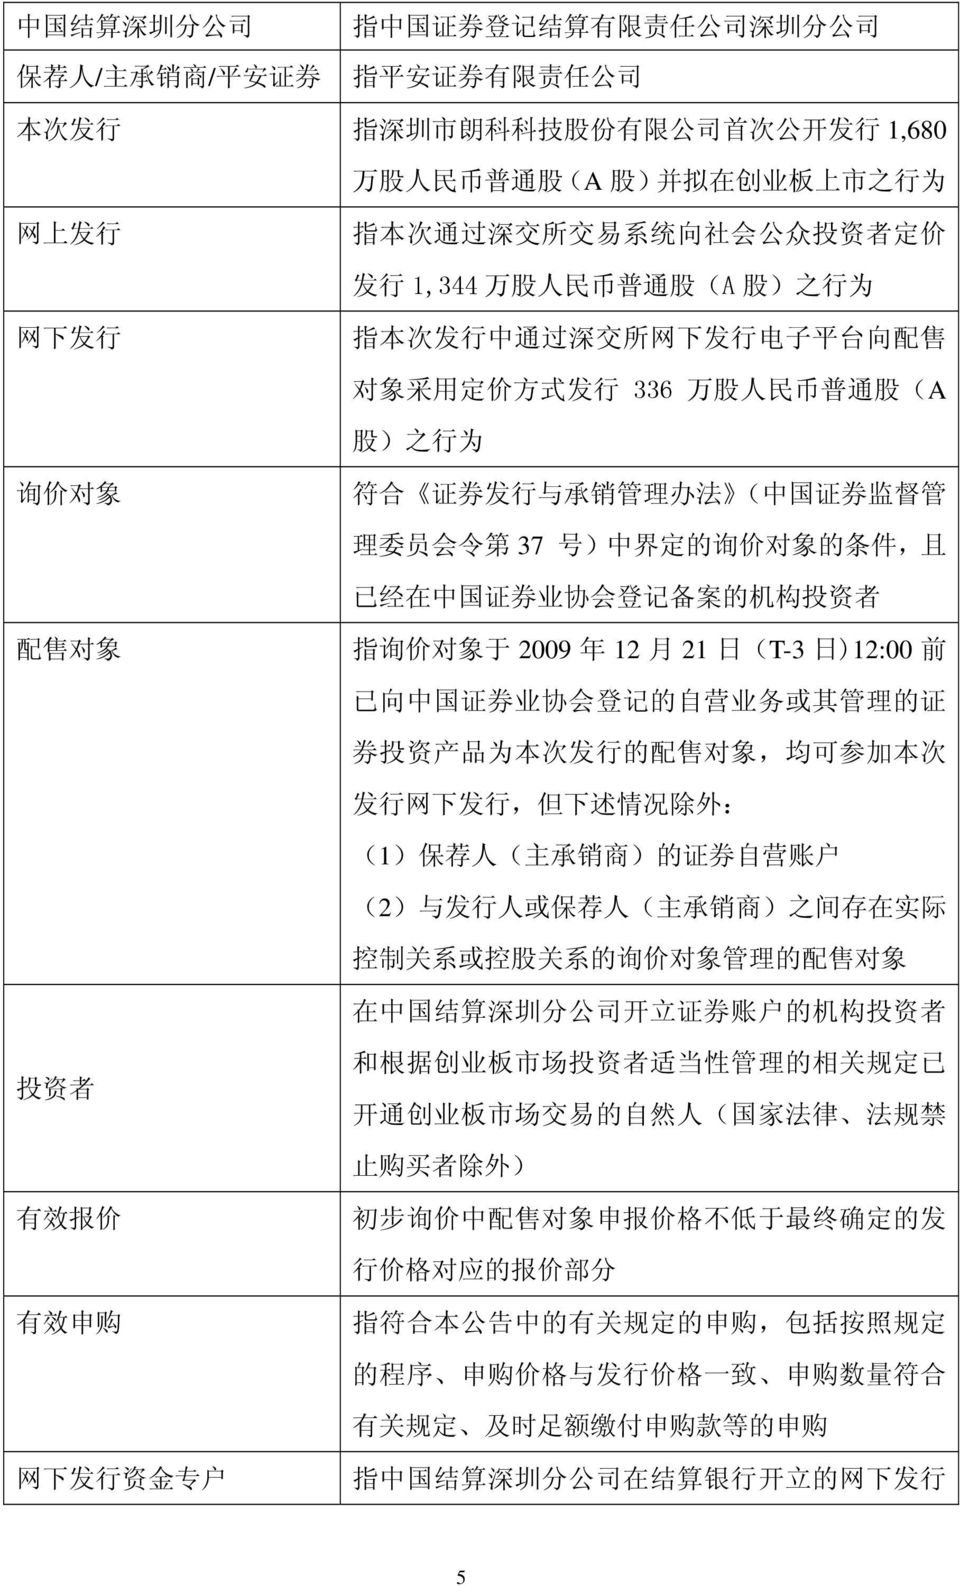 为 询 价 对 象 符 合 证 券 发 行 与 承 销 管 理 办 法 ( 中 国 证 券 监 督 管 理 委 员 会 令 第 37 号 ) 中 界 定 的 询 价 对 象 的 条 件, 且 已 经 在 中 国 证 券 业 协 会 登 记 备 案 的 机 构 投 资 者 配 售 对 象 指 询 价 对 象 于 2009 年 12 月 21 日 (T-3 日 )12:00 前 已 向 中 国 证